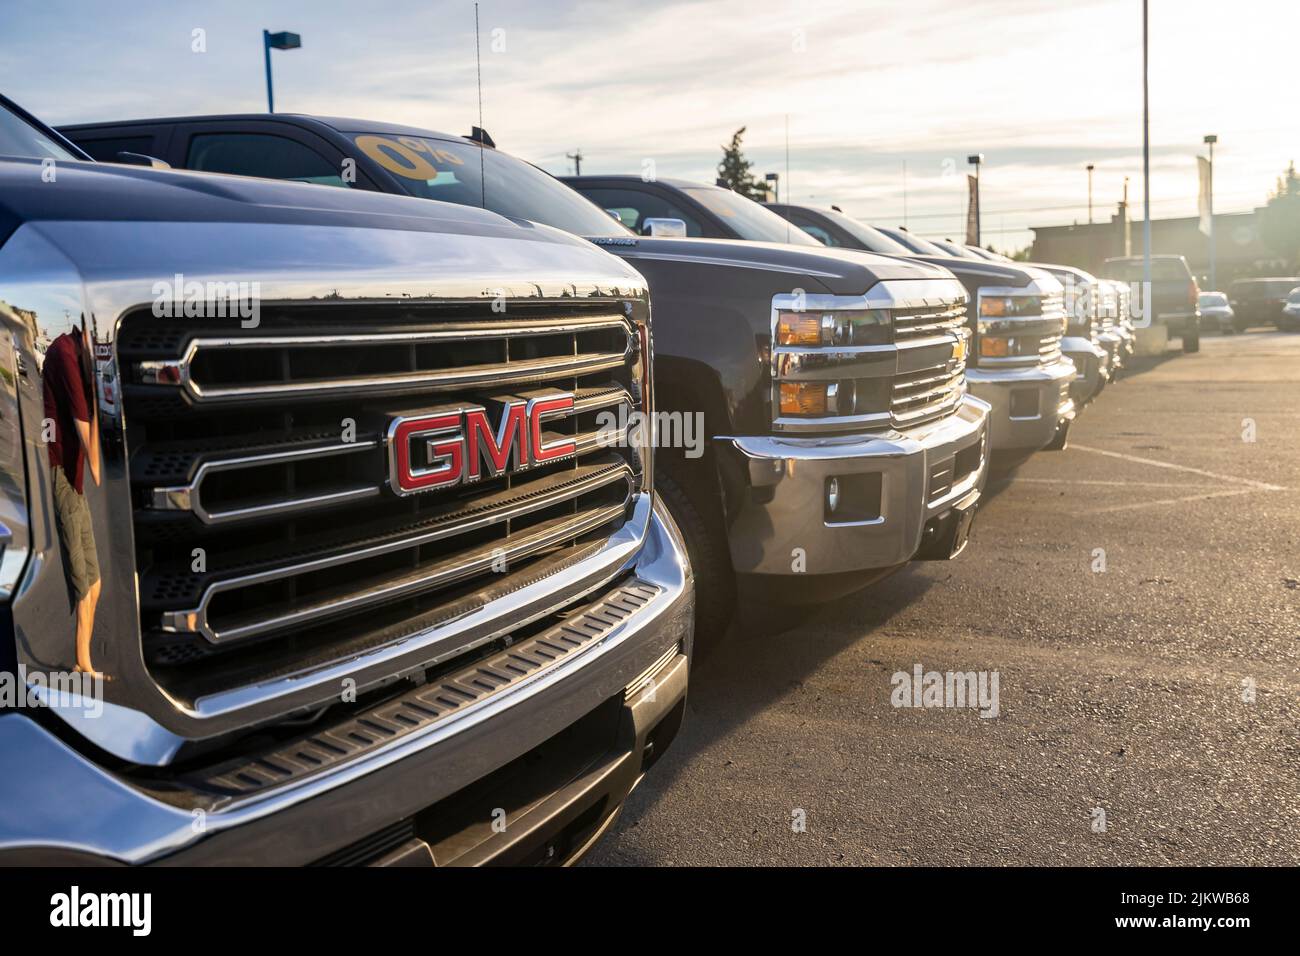 An einem sonnigen Tag stehen Lastwagen bei einem GMC-Händler zum Verkauf bereit Stockfoto